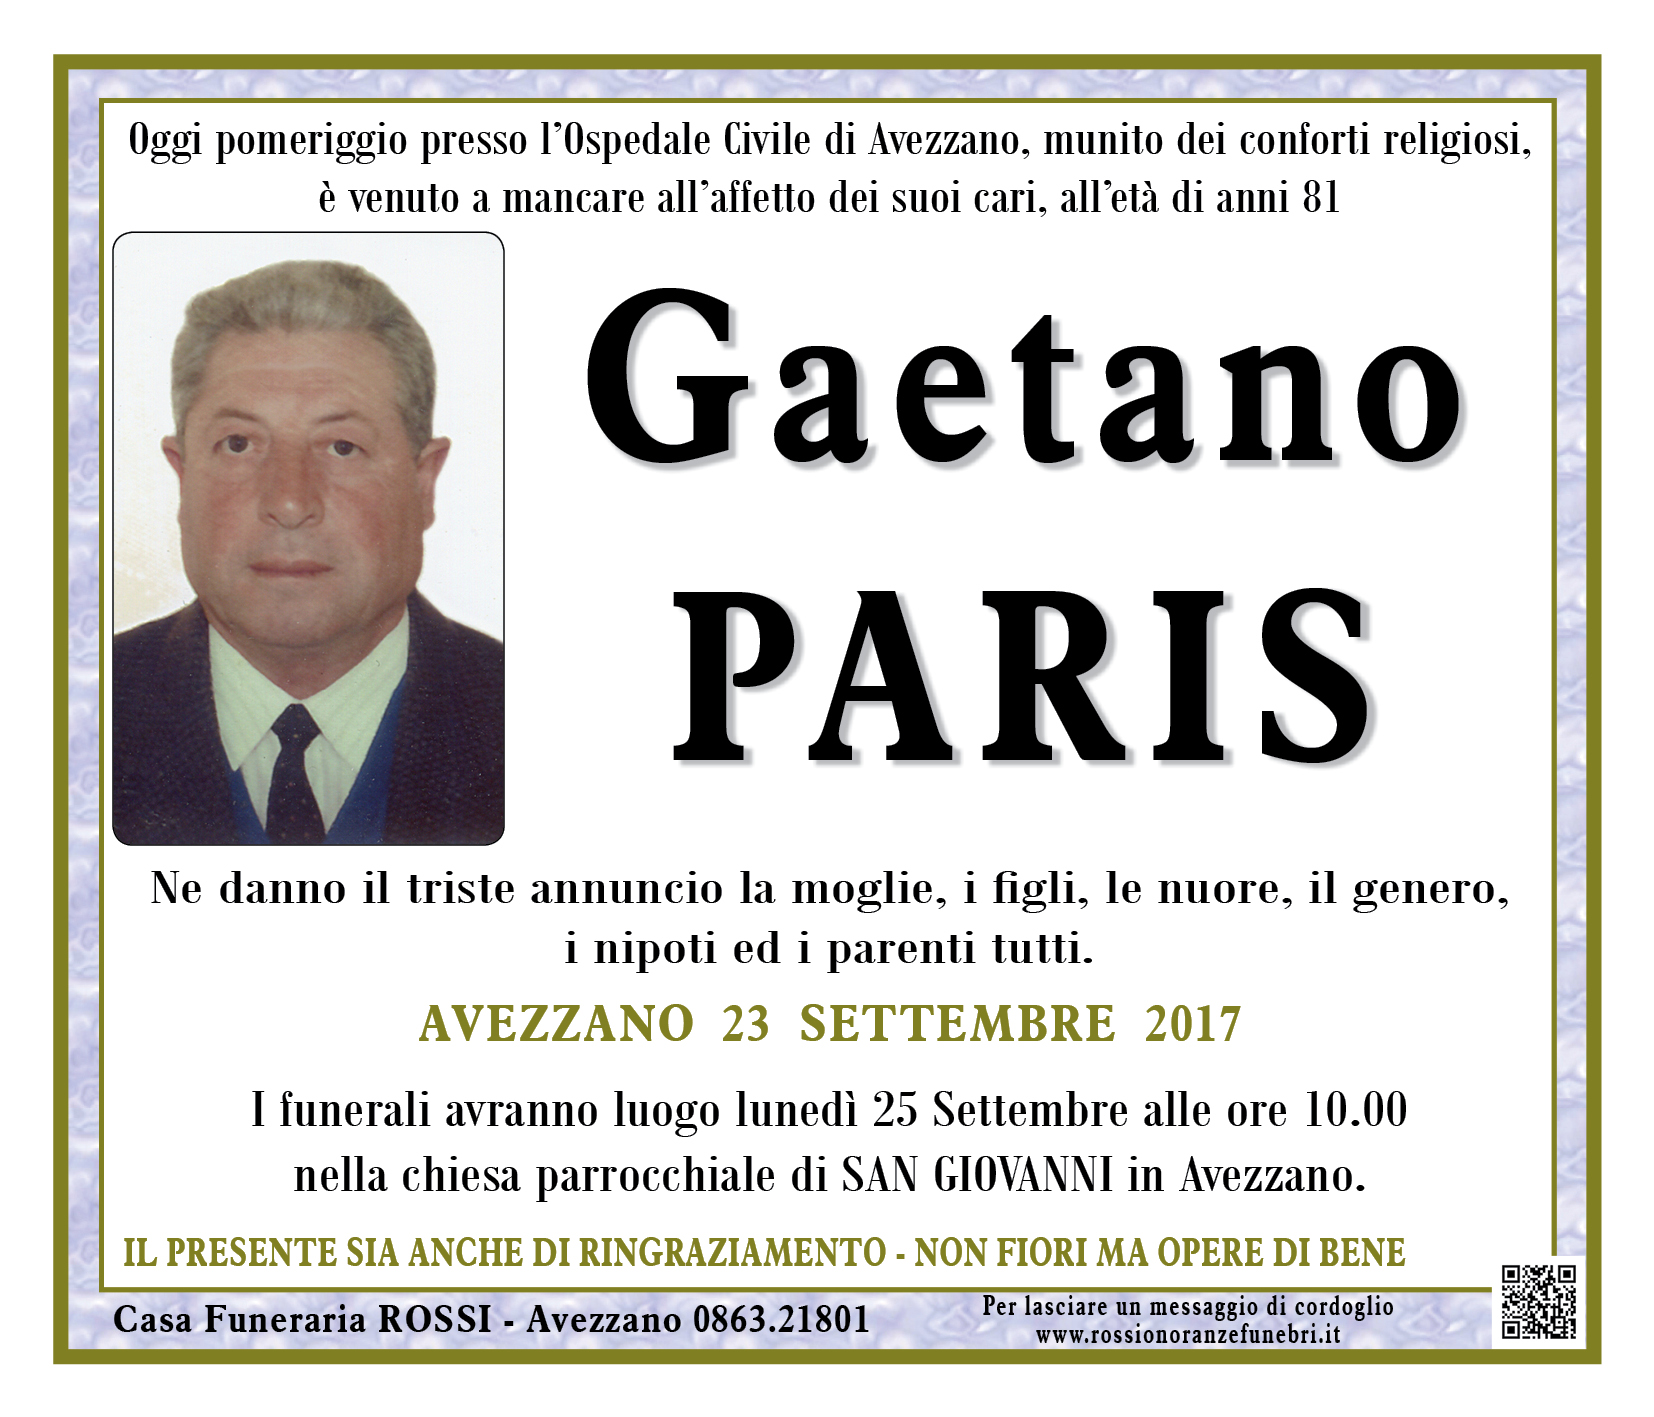 Gaetano Paris